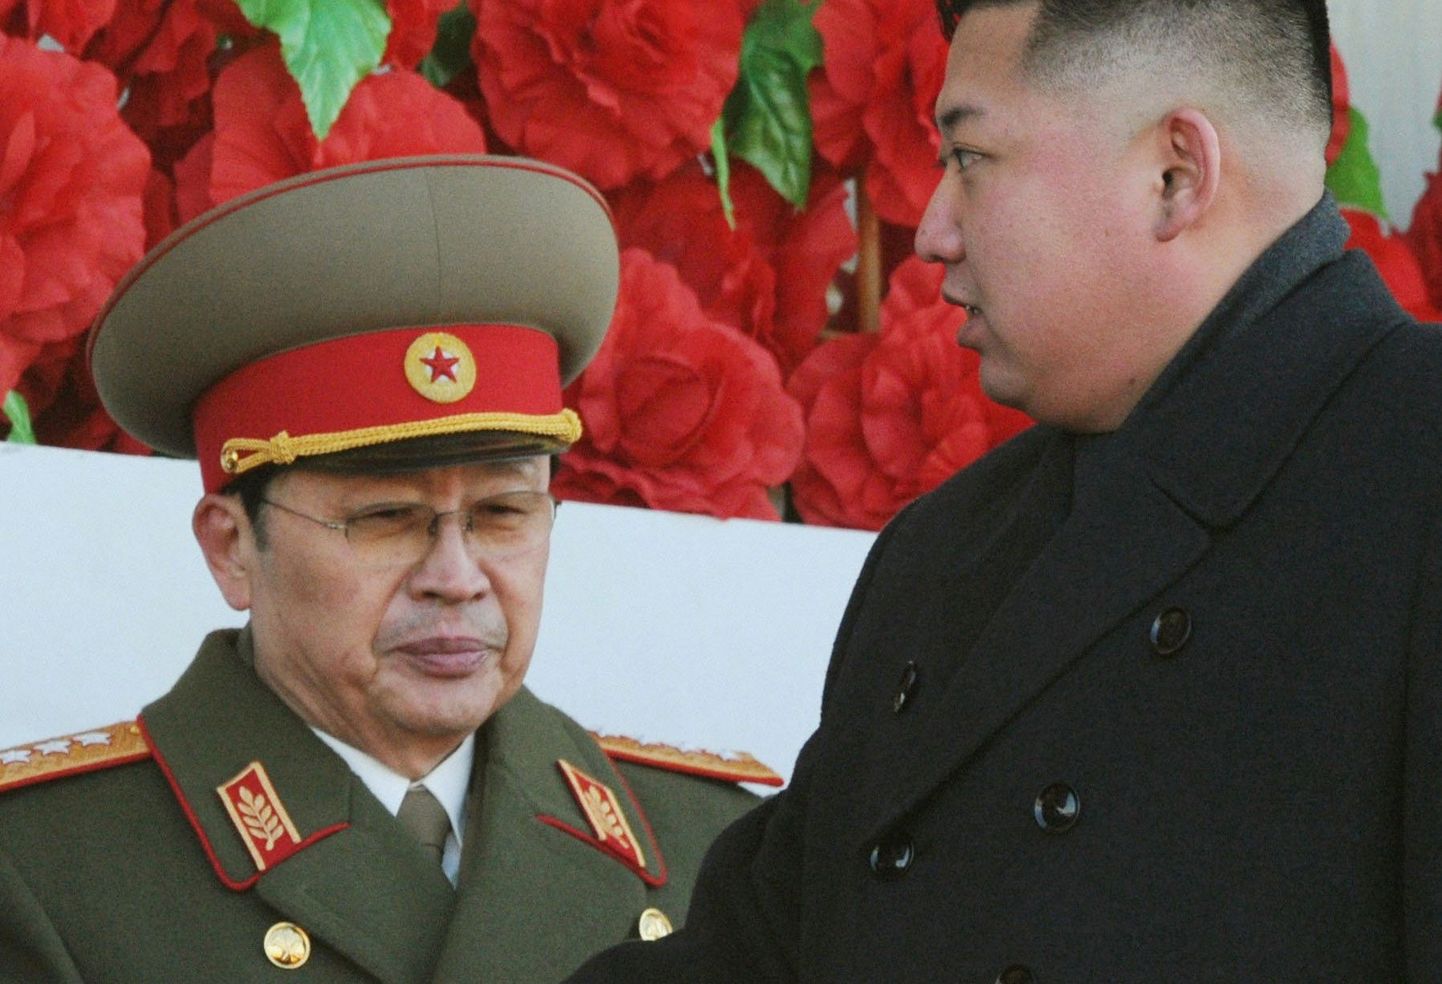 Põhja-Korea liider Kim Jong-un (paremal) koos tädimehe Jang Song-thaekiga möödunud novembris sõjaväeparaadil.